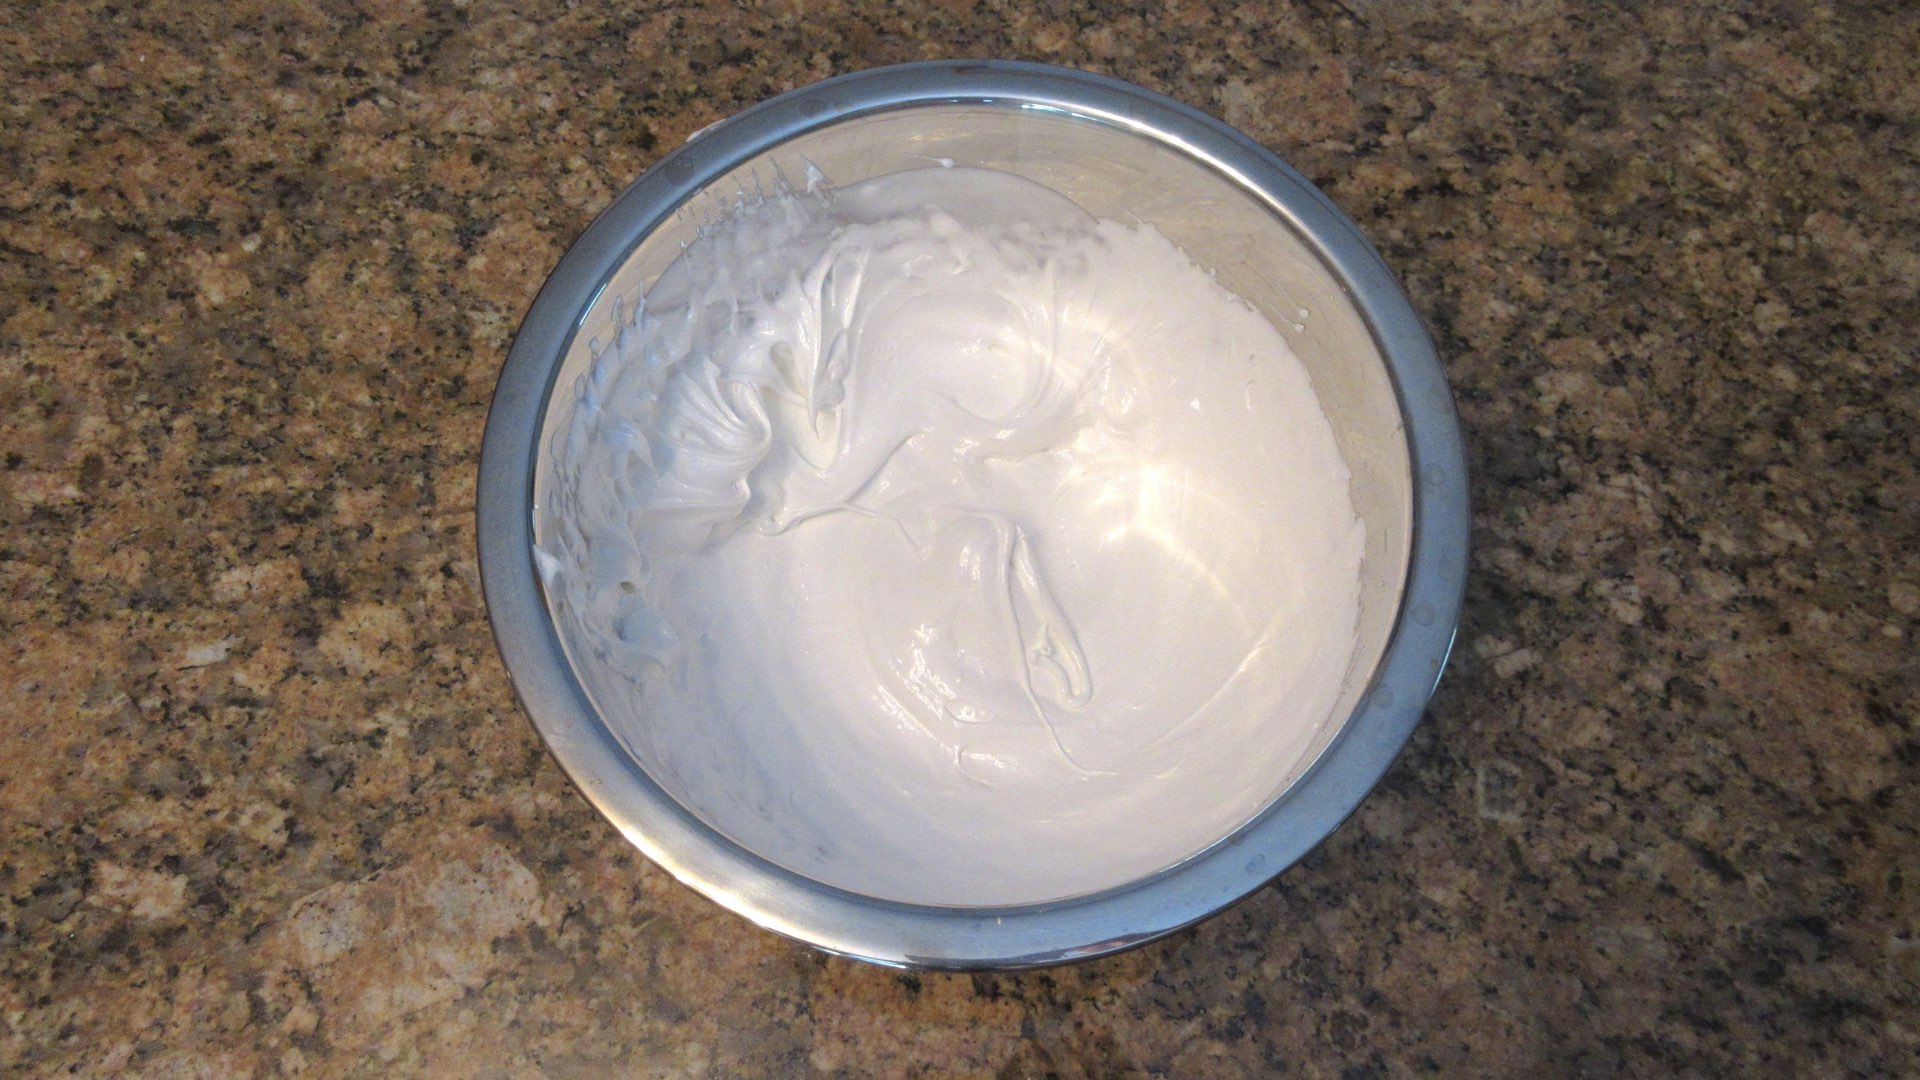 no-bake lemon meringue pie